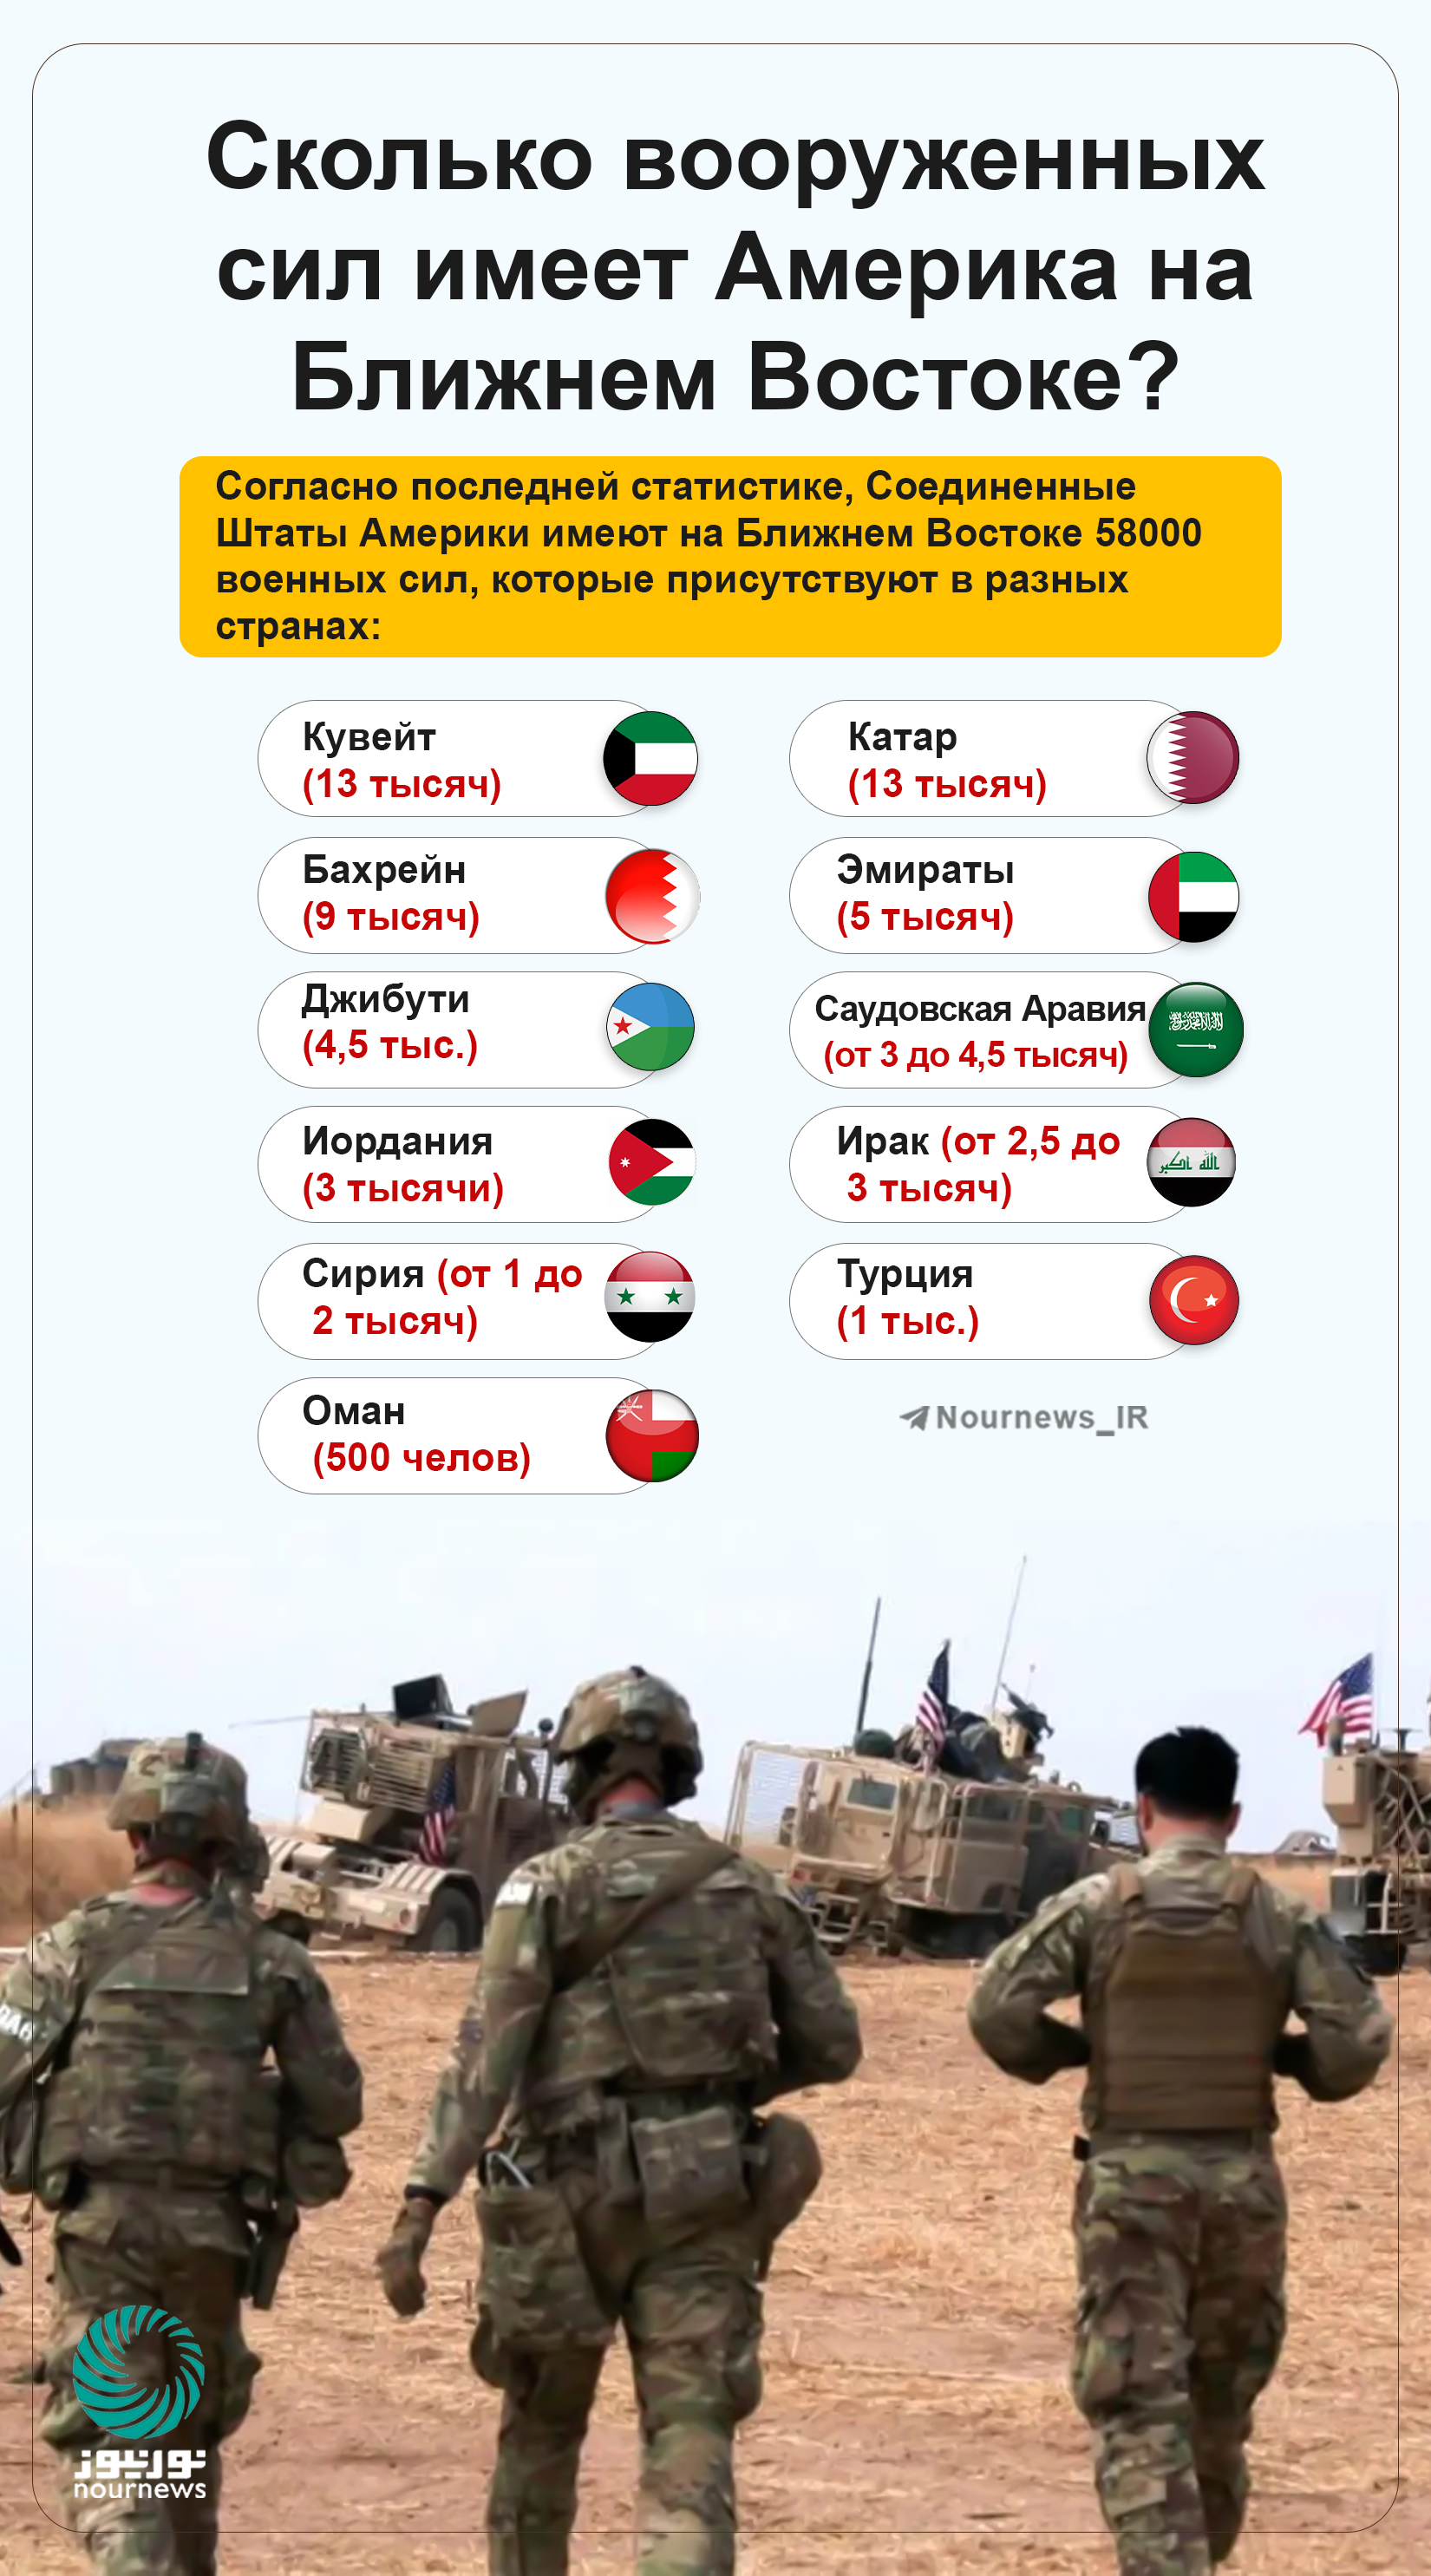 Сколько вооруженных сил имеет Америка на Ближнем Востоке?